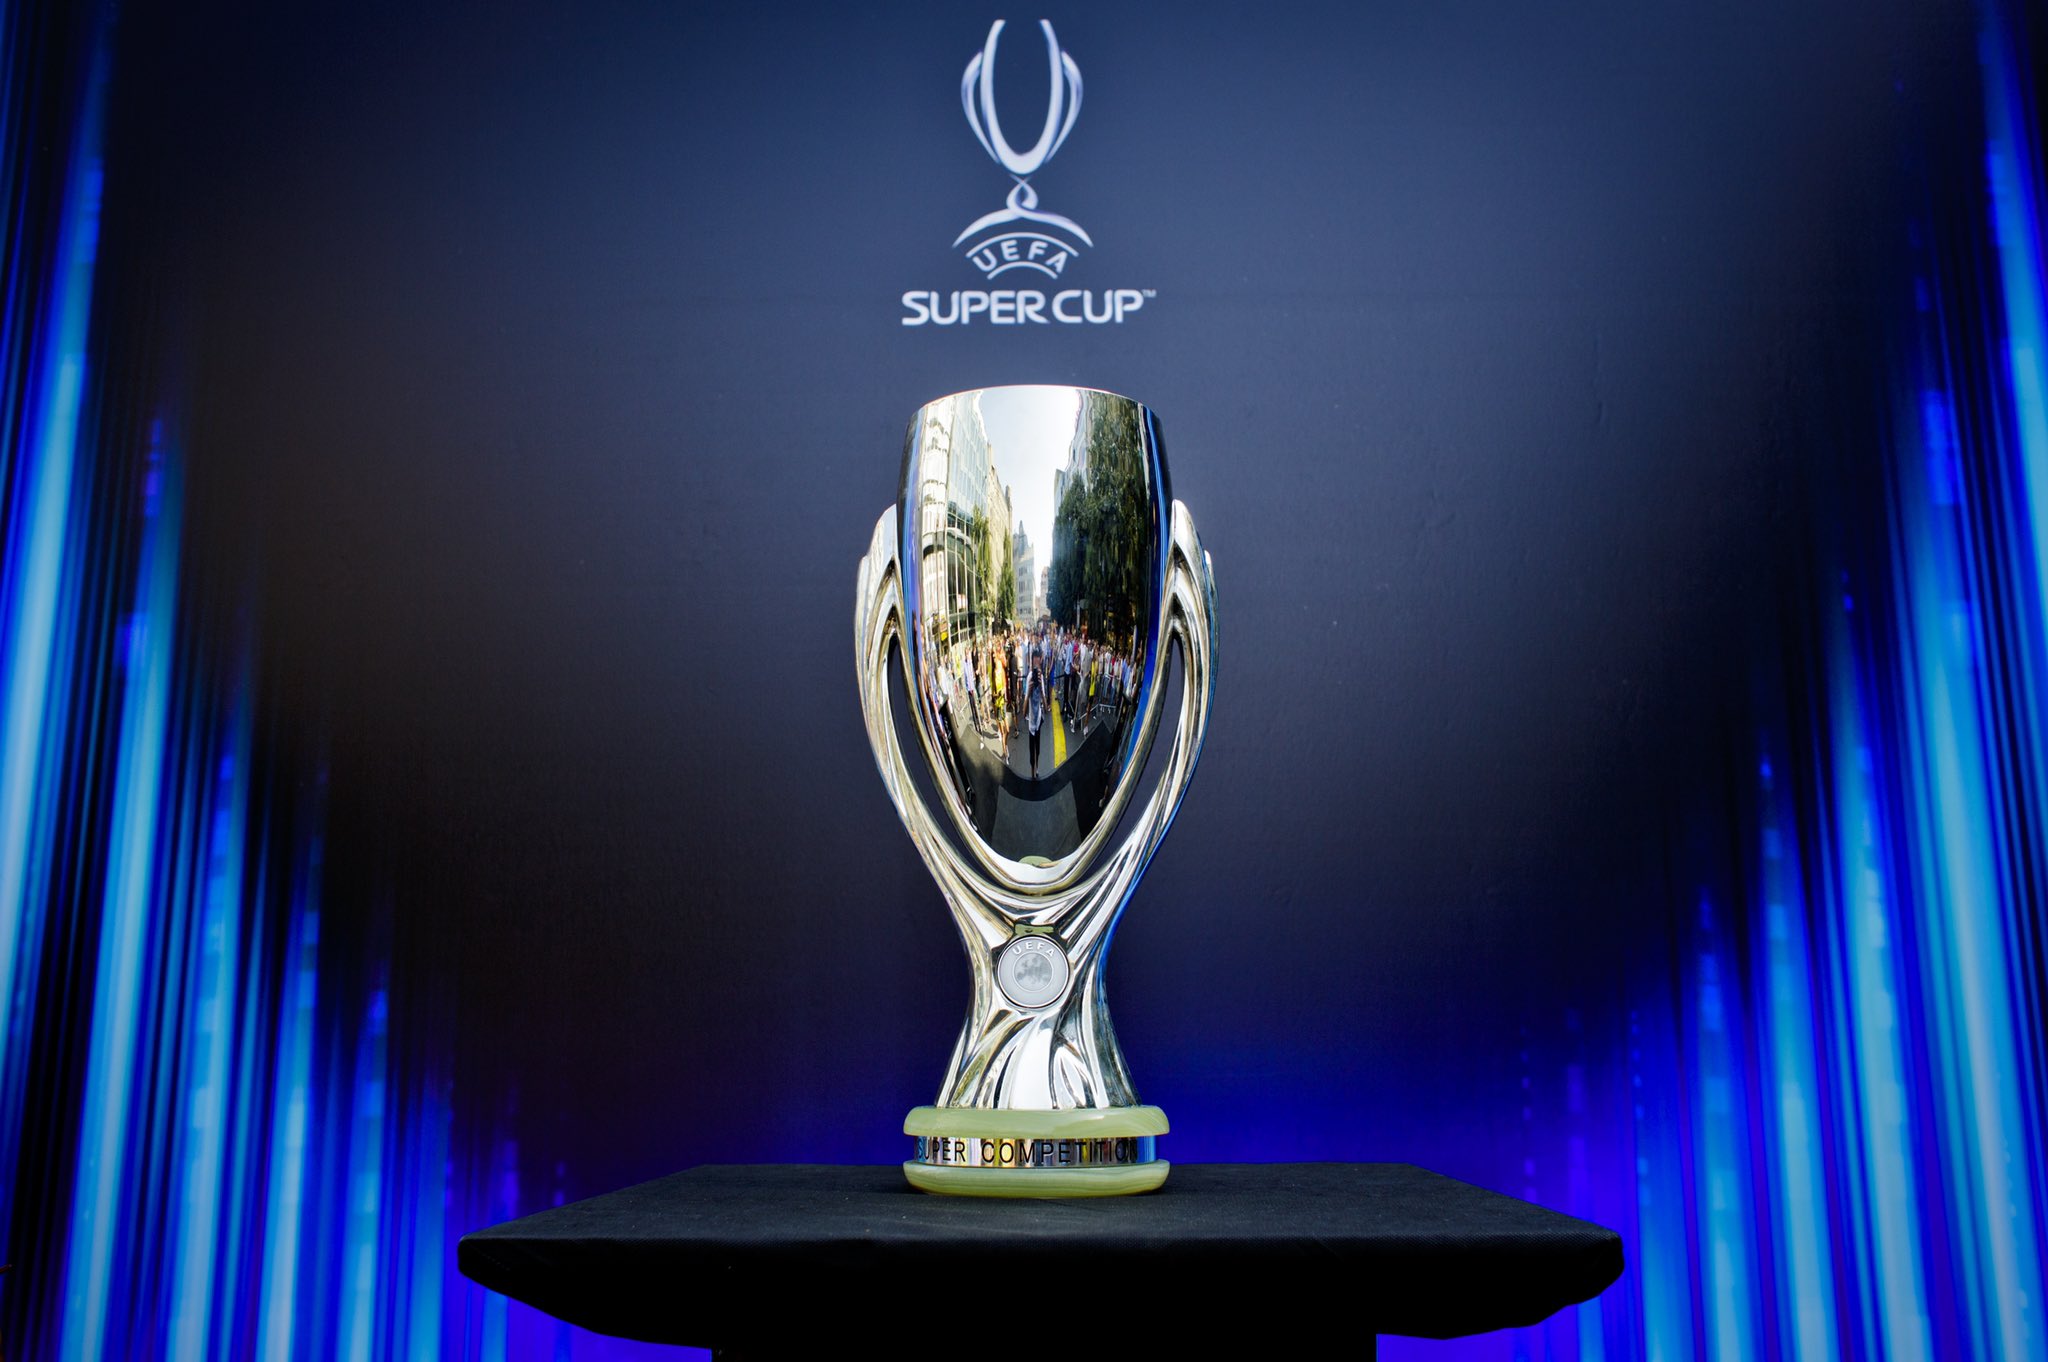 UEFA Super Cup Date And Venue Announced